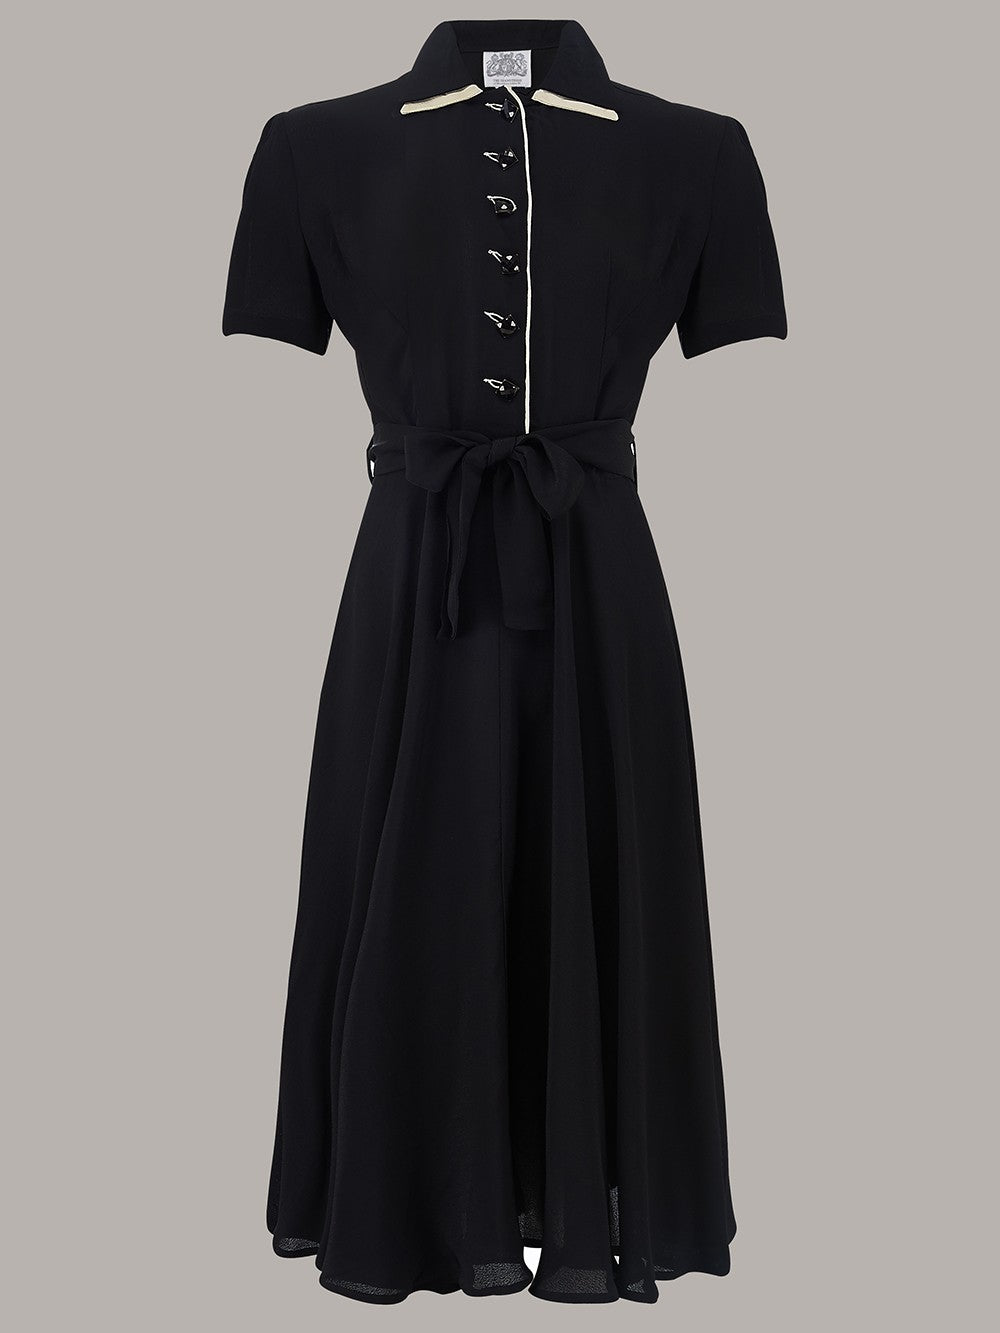 Lana 1940s Dress in Black